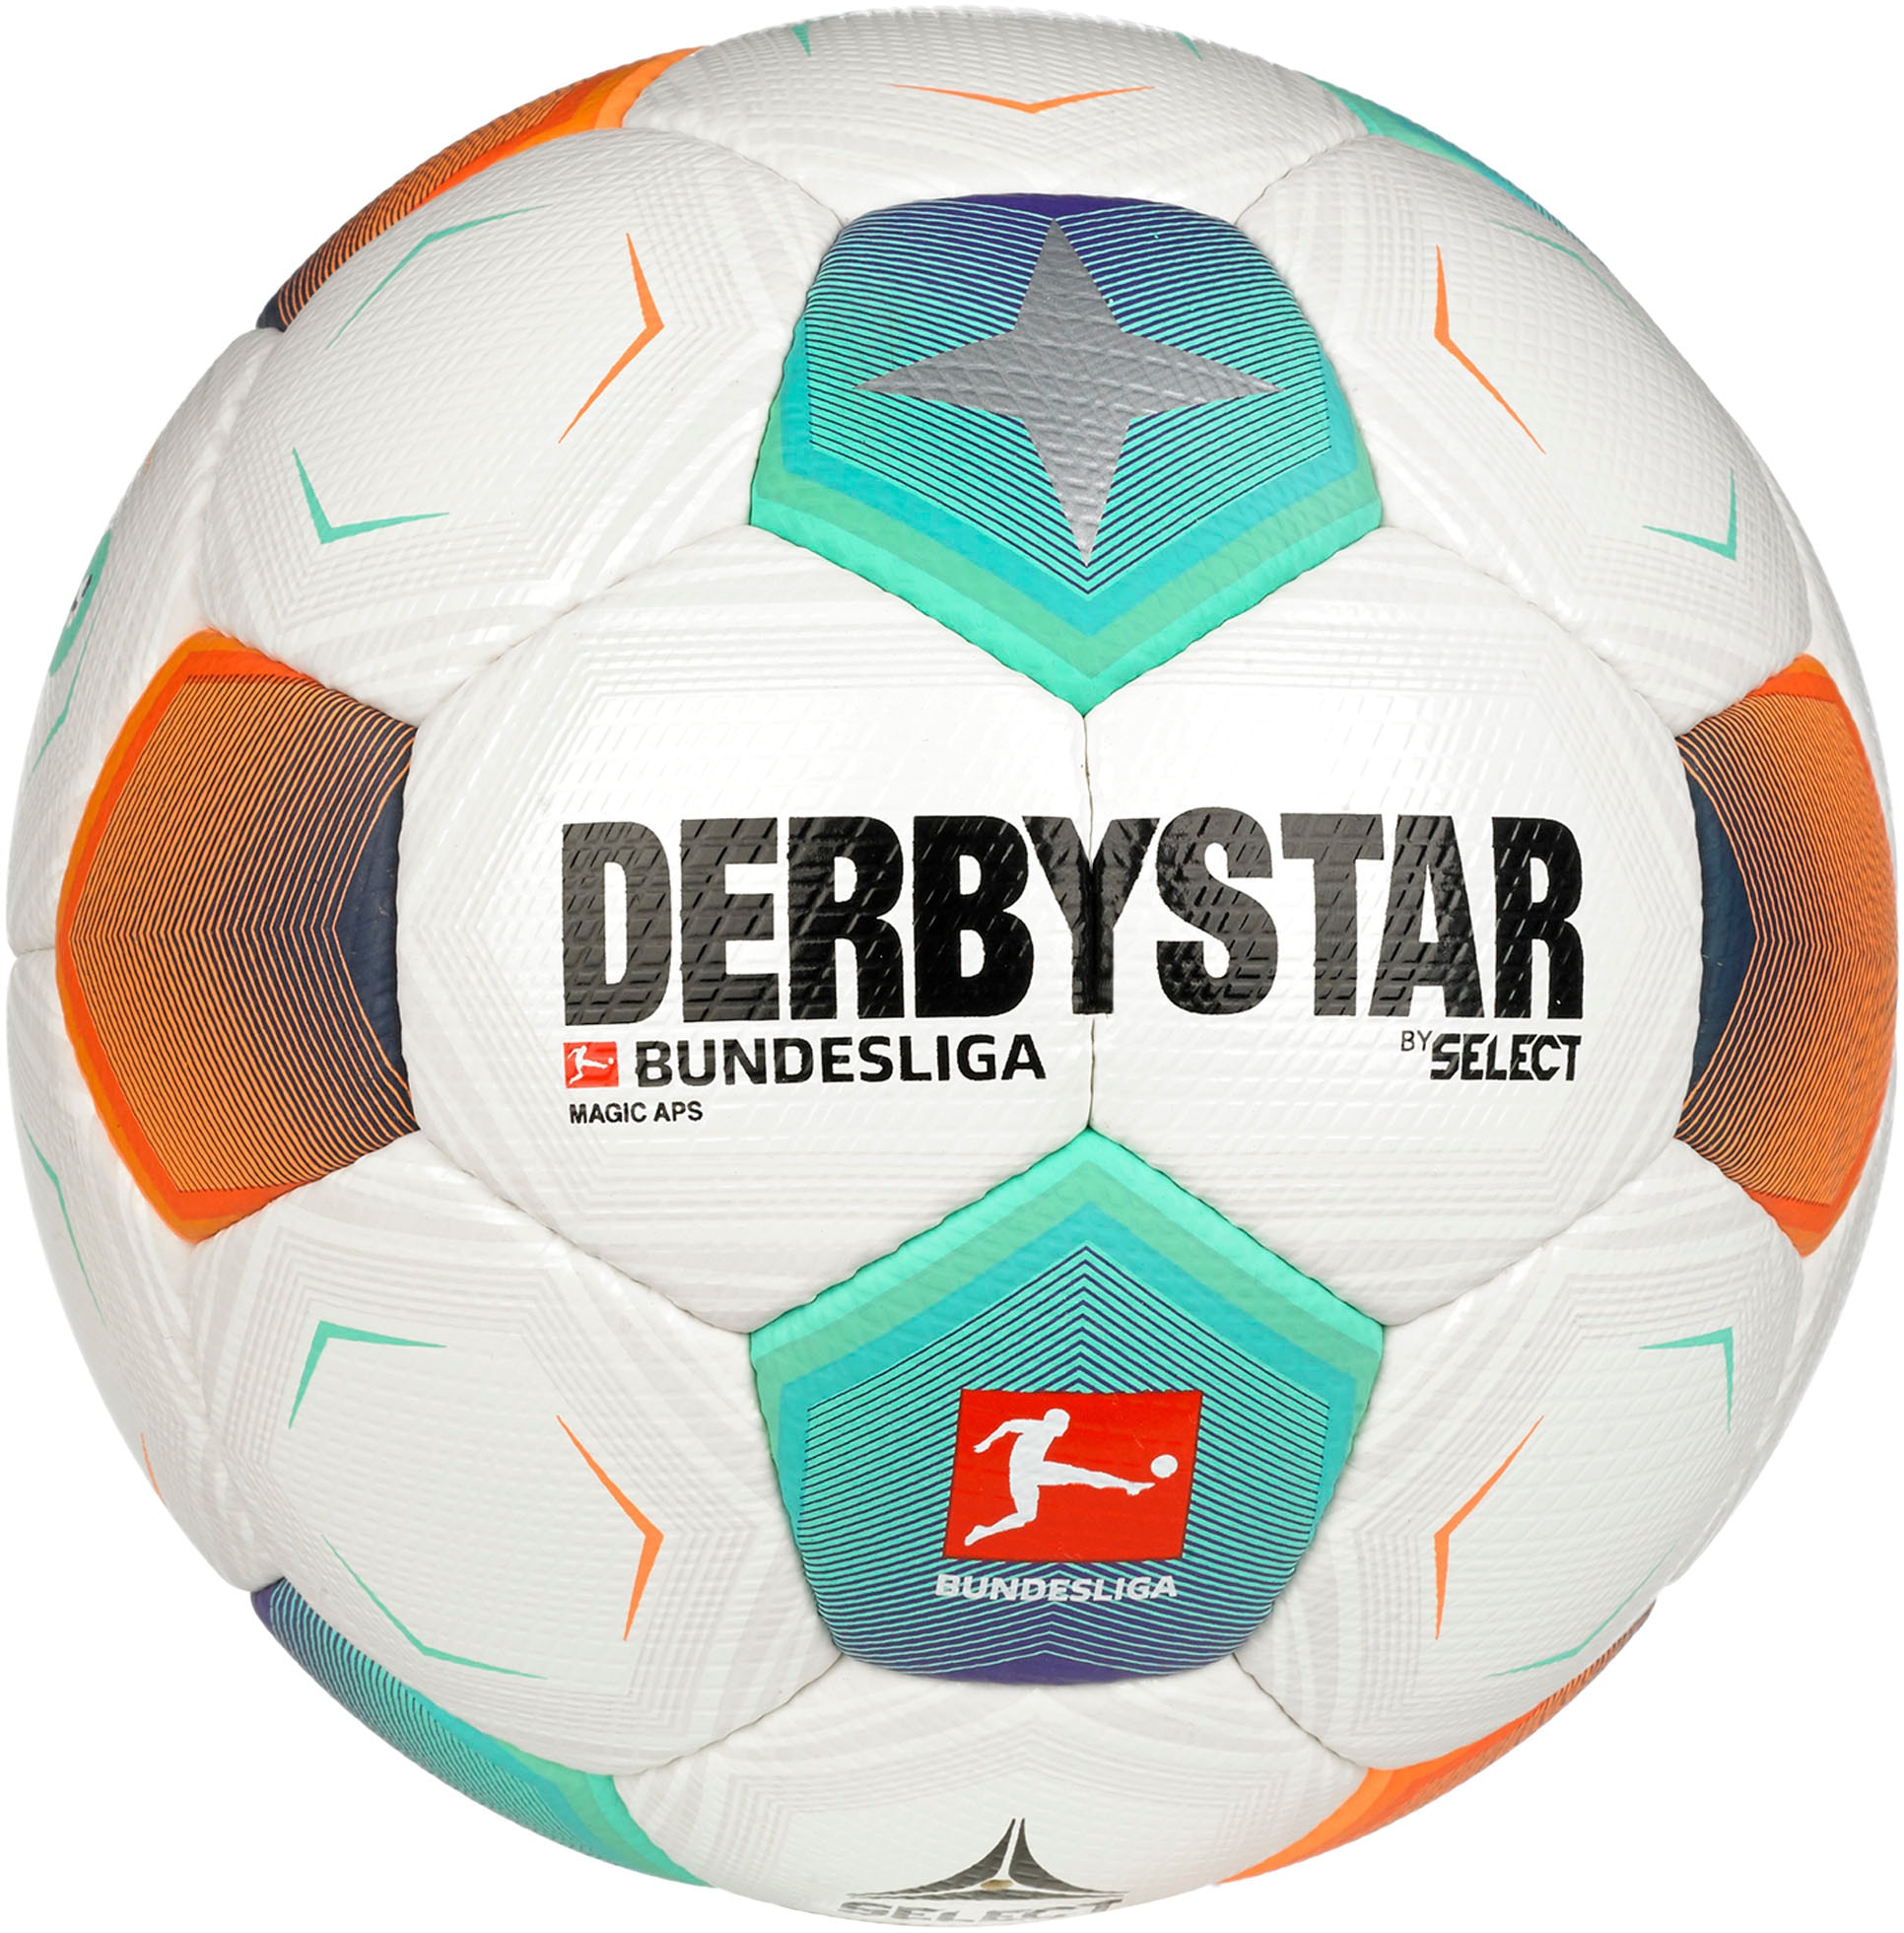 Derbystar Fussball »Bundesliga Magic APS«